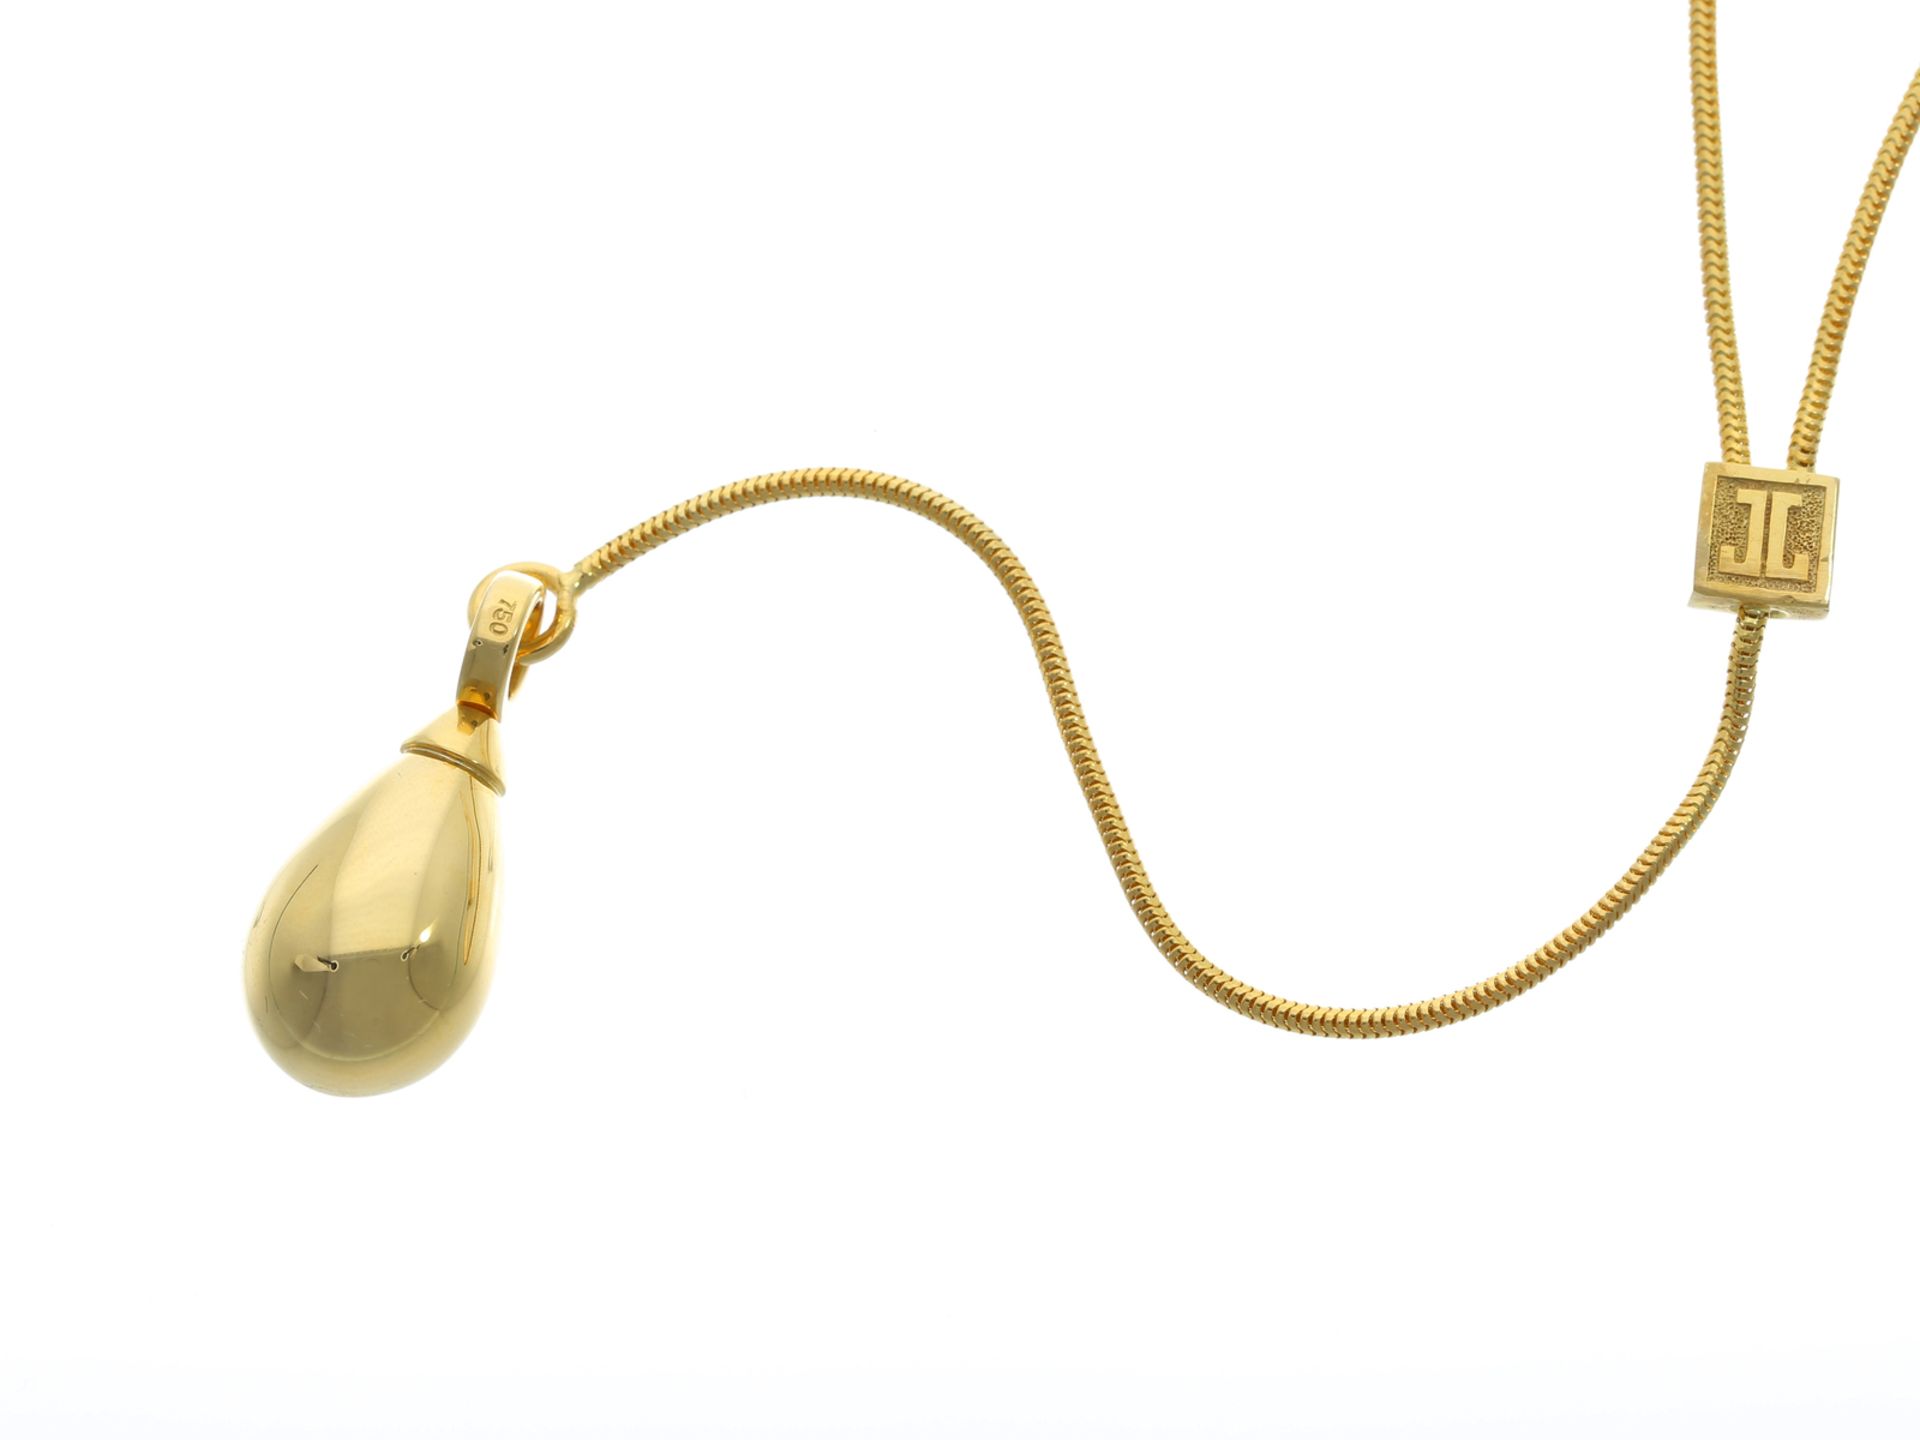 Kette/Collier: schöne Designerkette aus dem Hause Jette Joop, 18K Gold